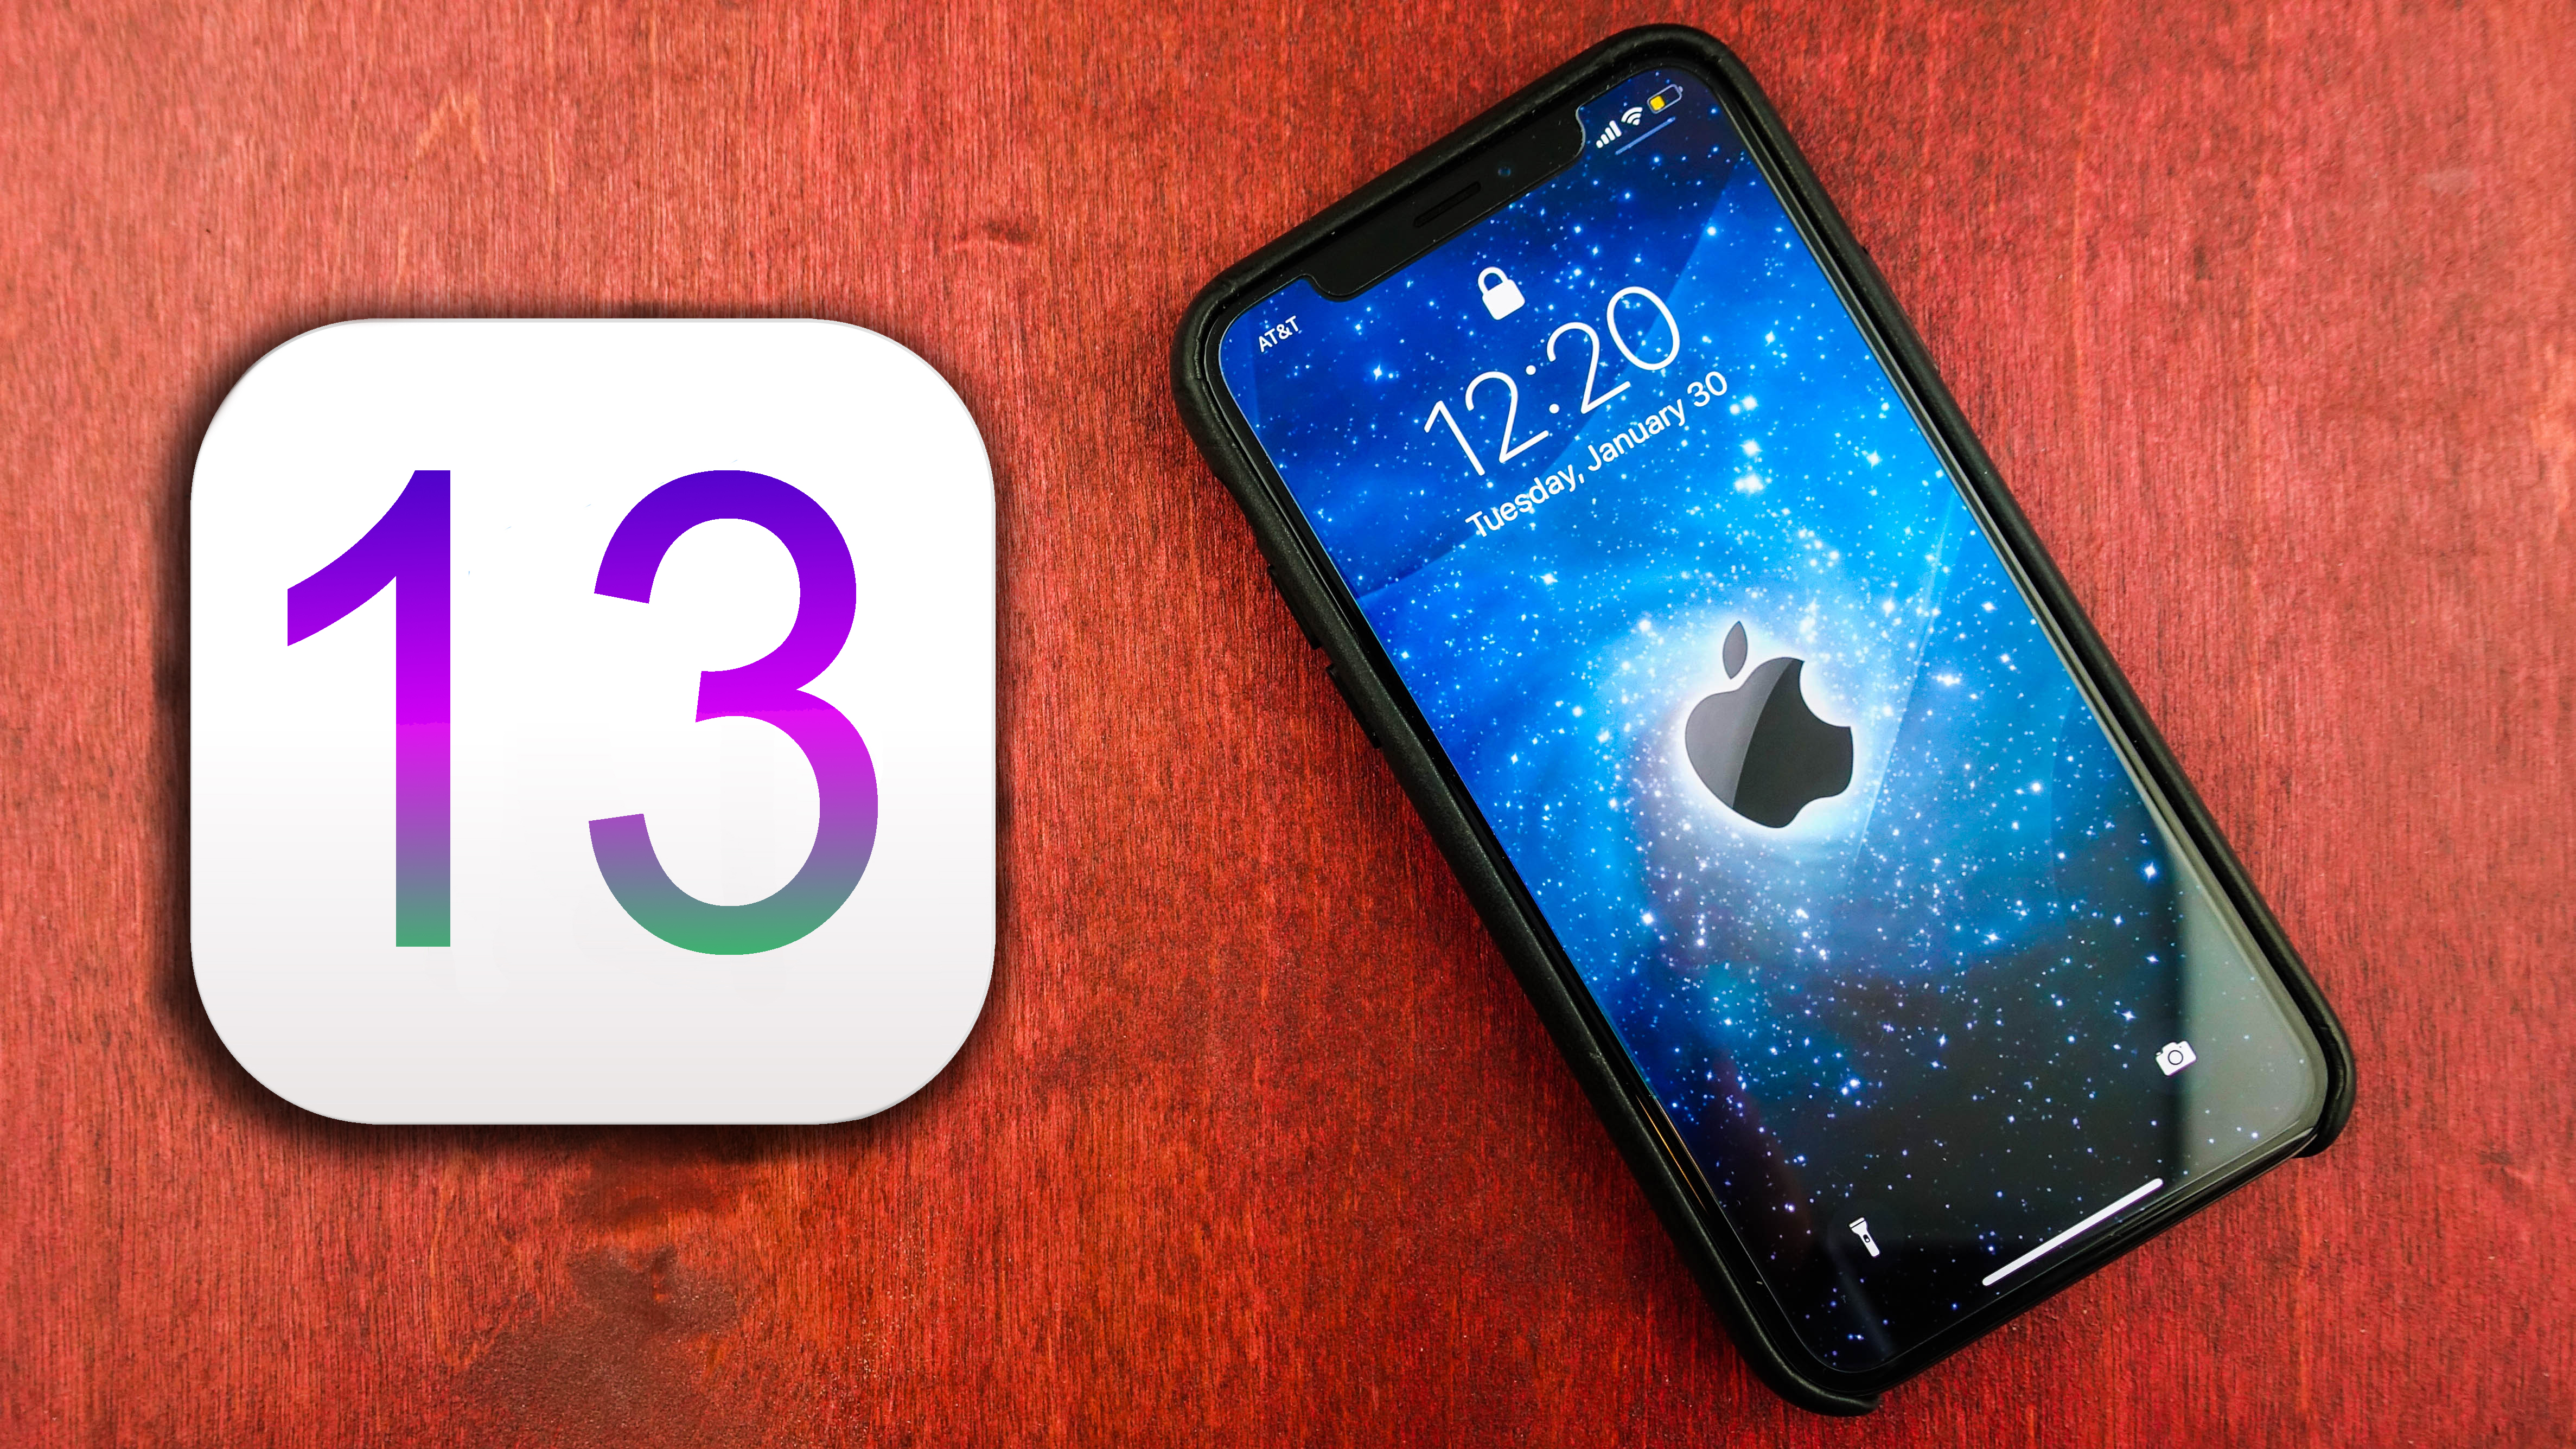 Apple iPhone 5 iPhone 6 iPhone 6 Plus iOS 13 update